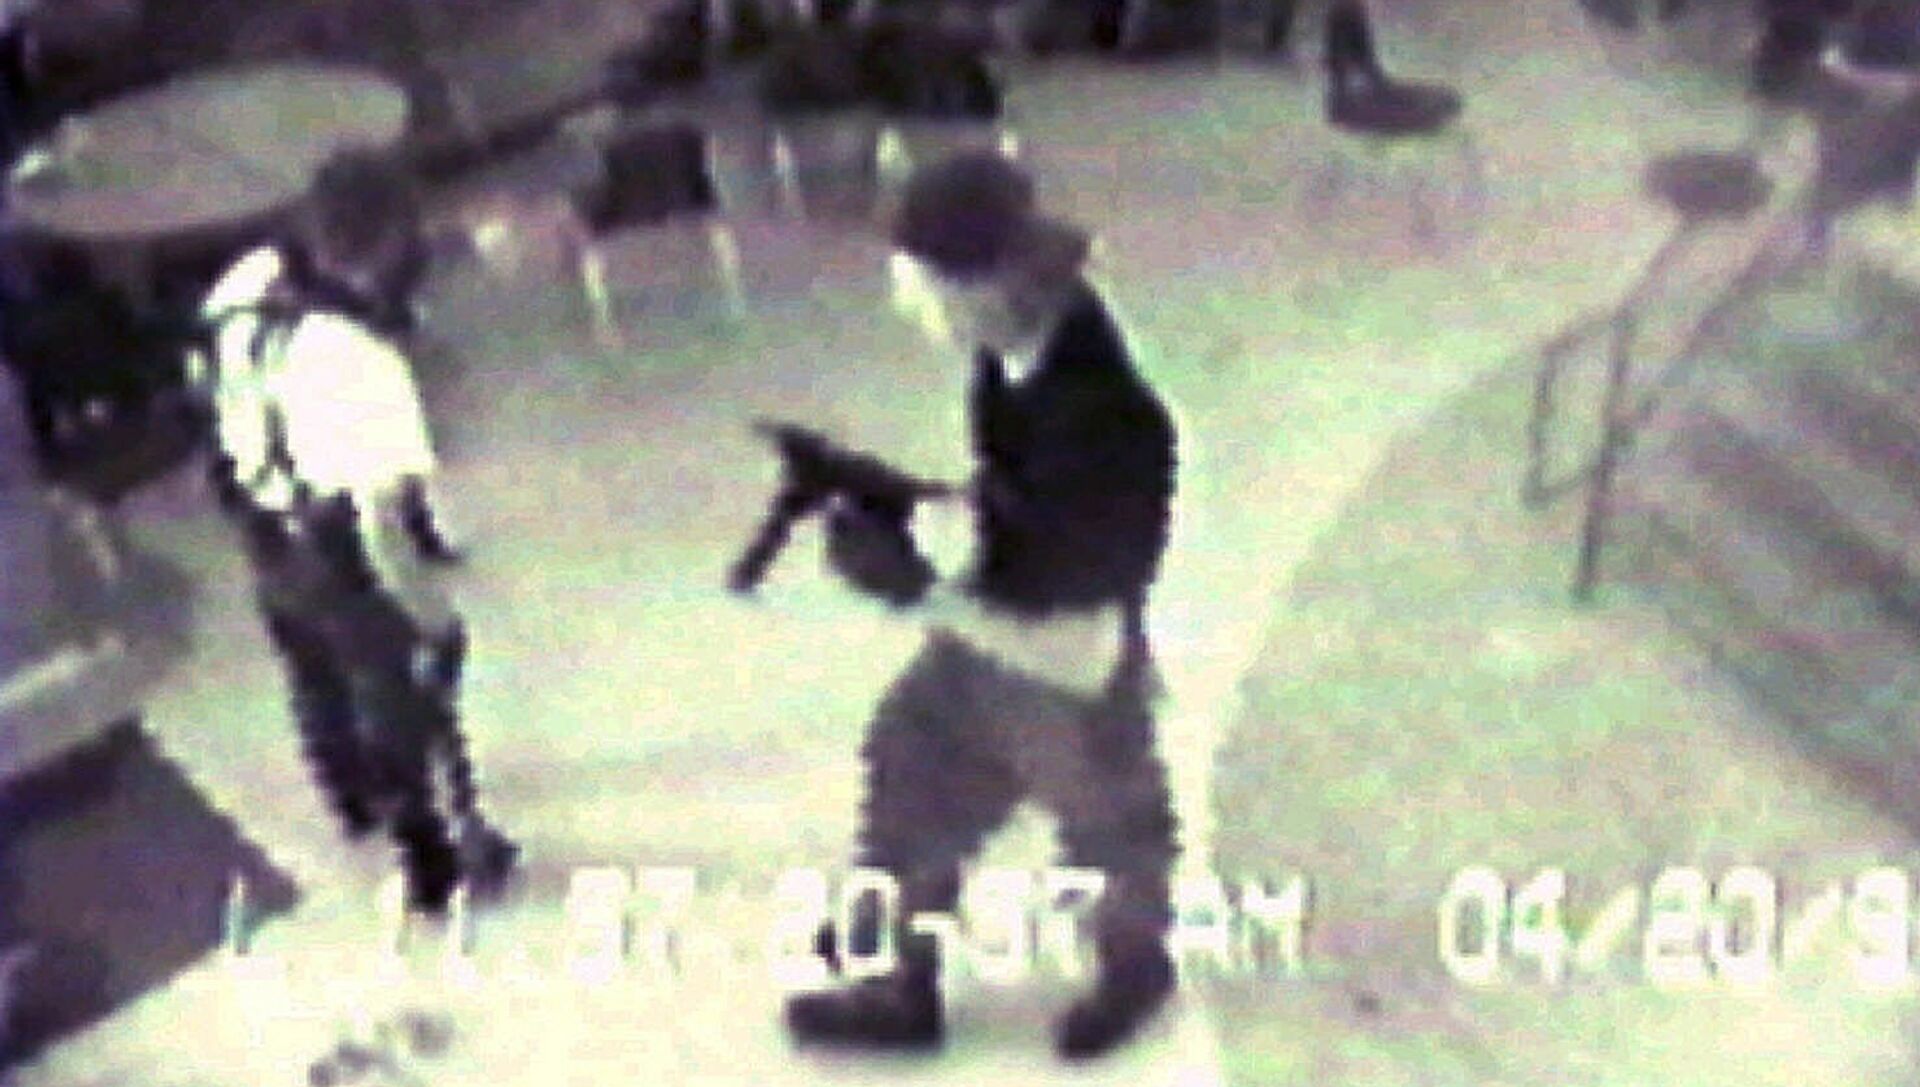 Эрик Харрис и Дилан Клеболда во время стрельбы в школе Колумбайн - РИА Новости, 1920, 07.05.2018